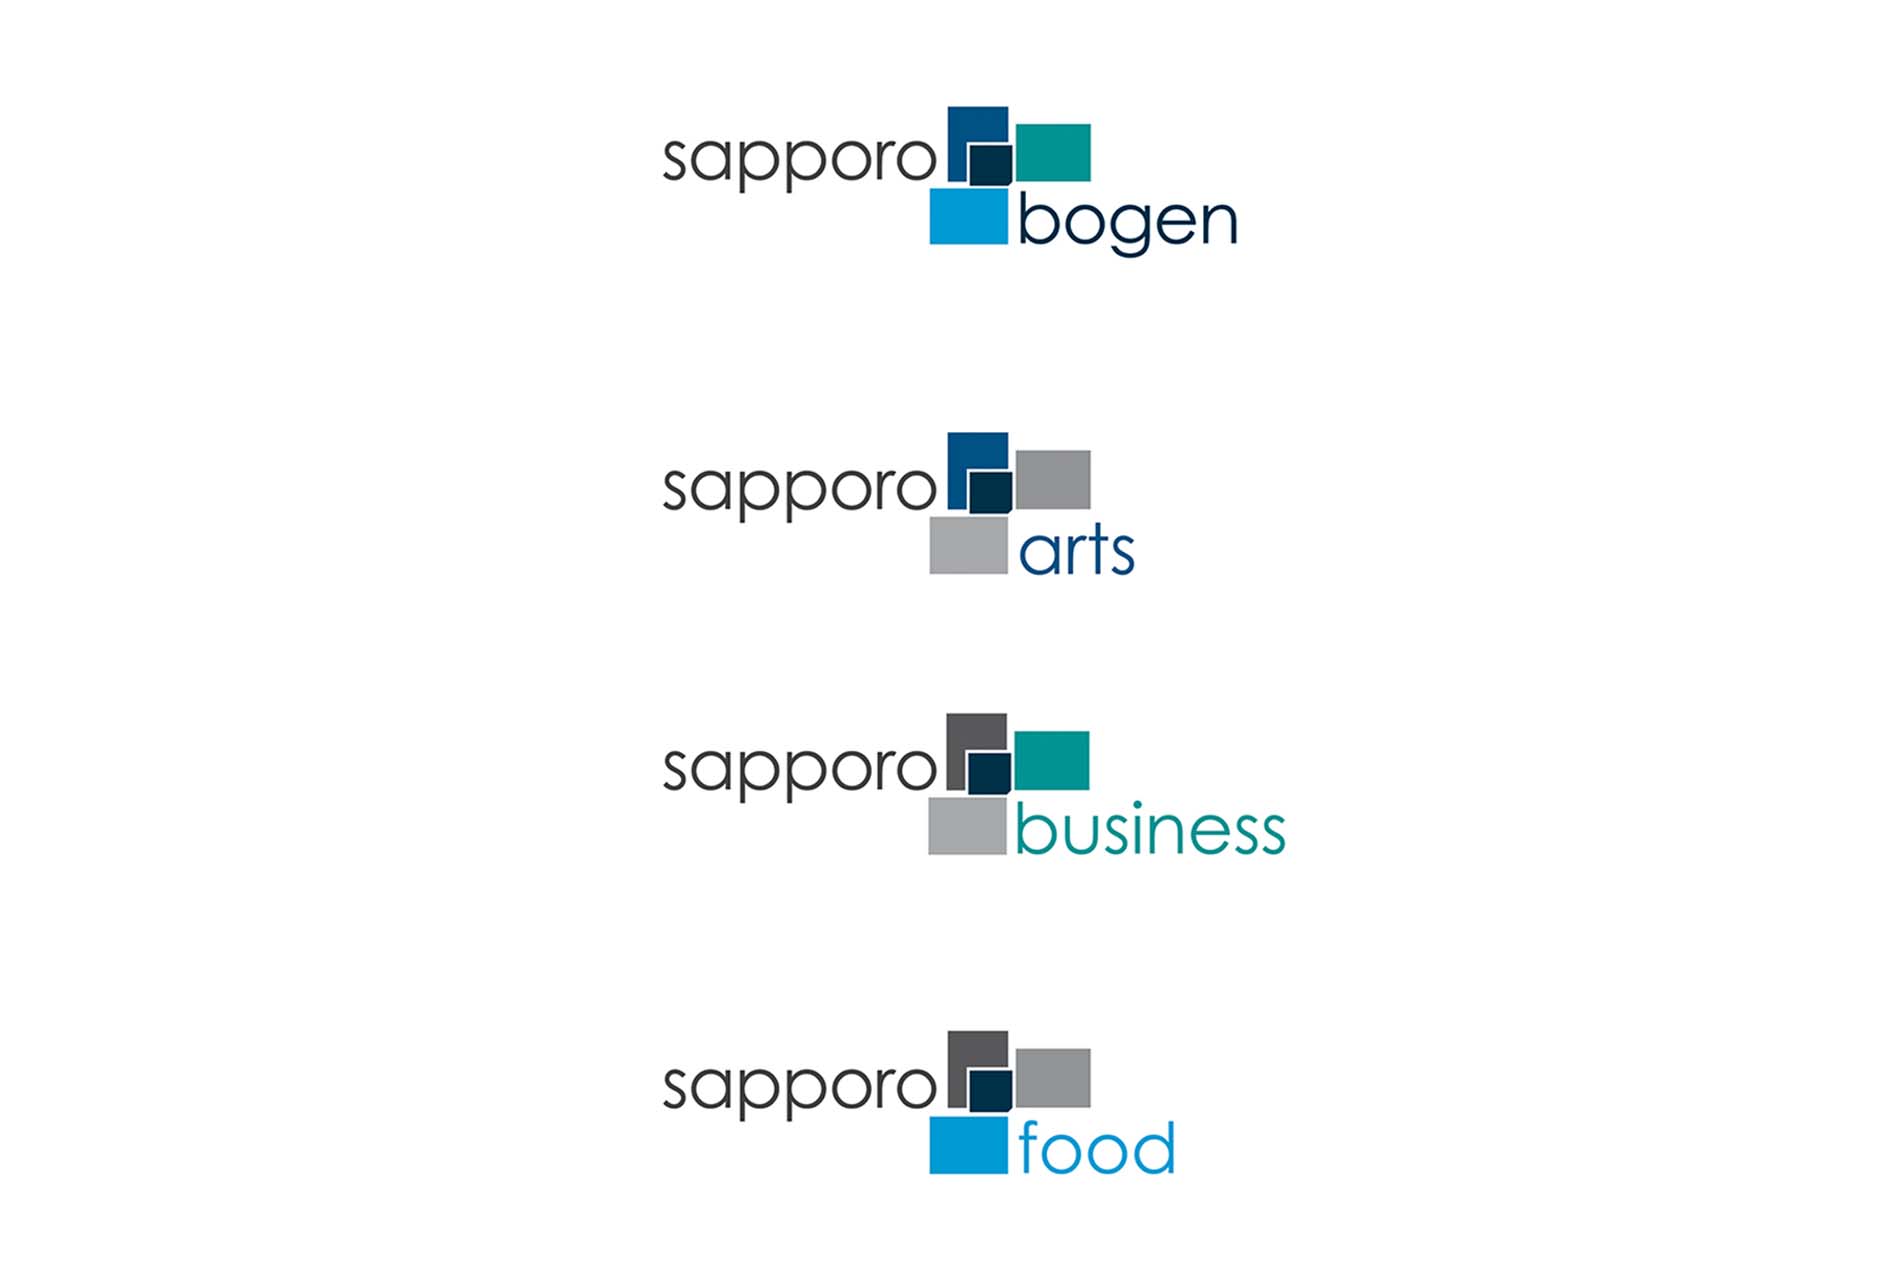 Sapporobogen_Logos